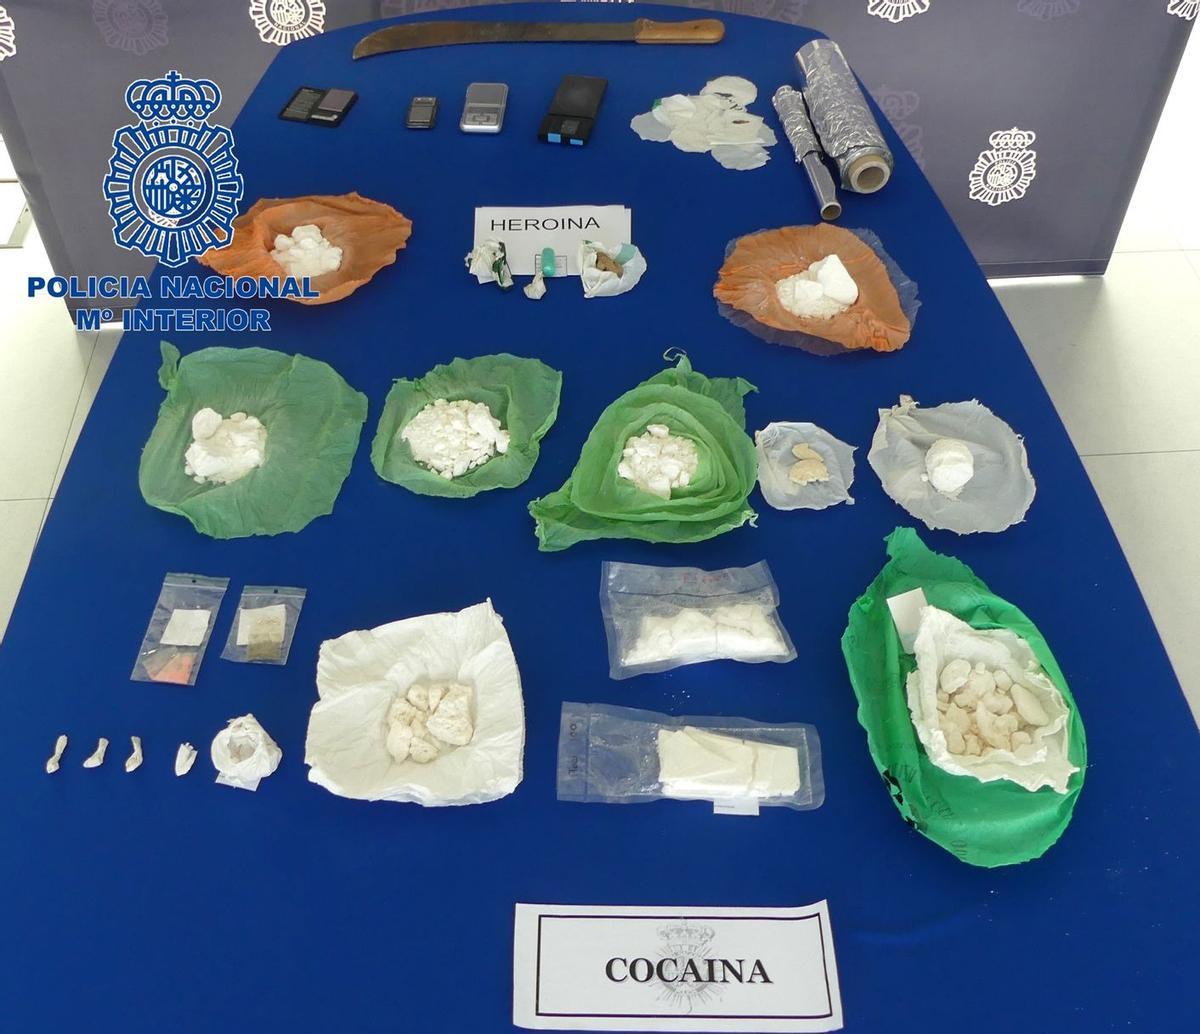 Los agentes intervinieron algo más de un kilo de cocaína, 25 gramos de heroína, un arma blanca de grandes dimensiones y básculas de precisión